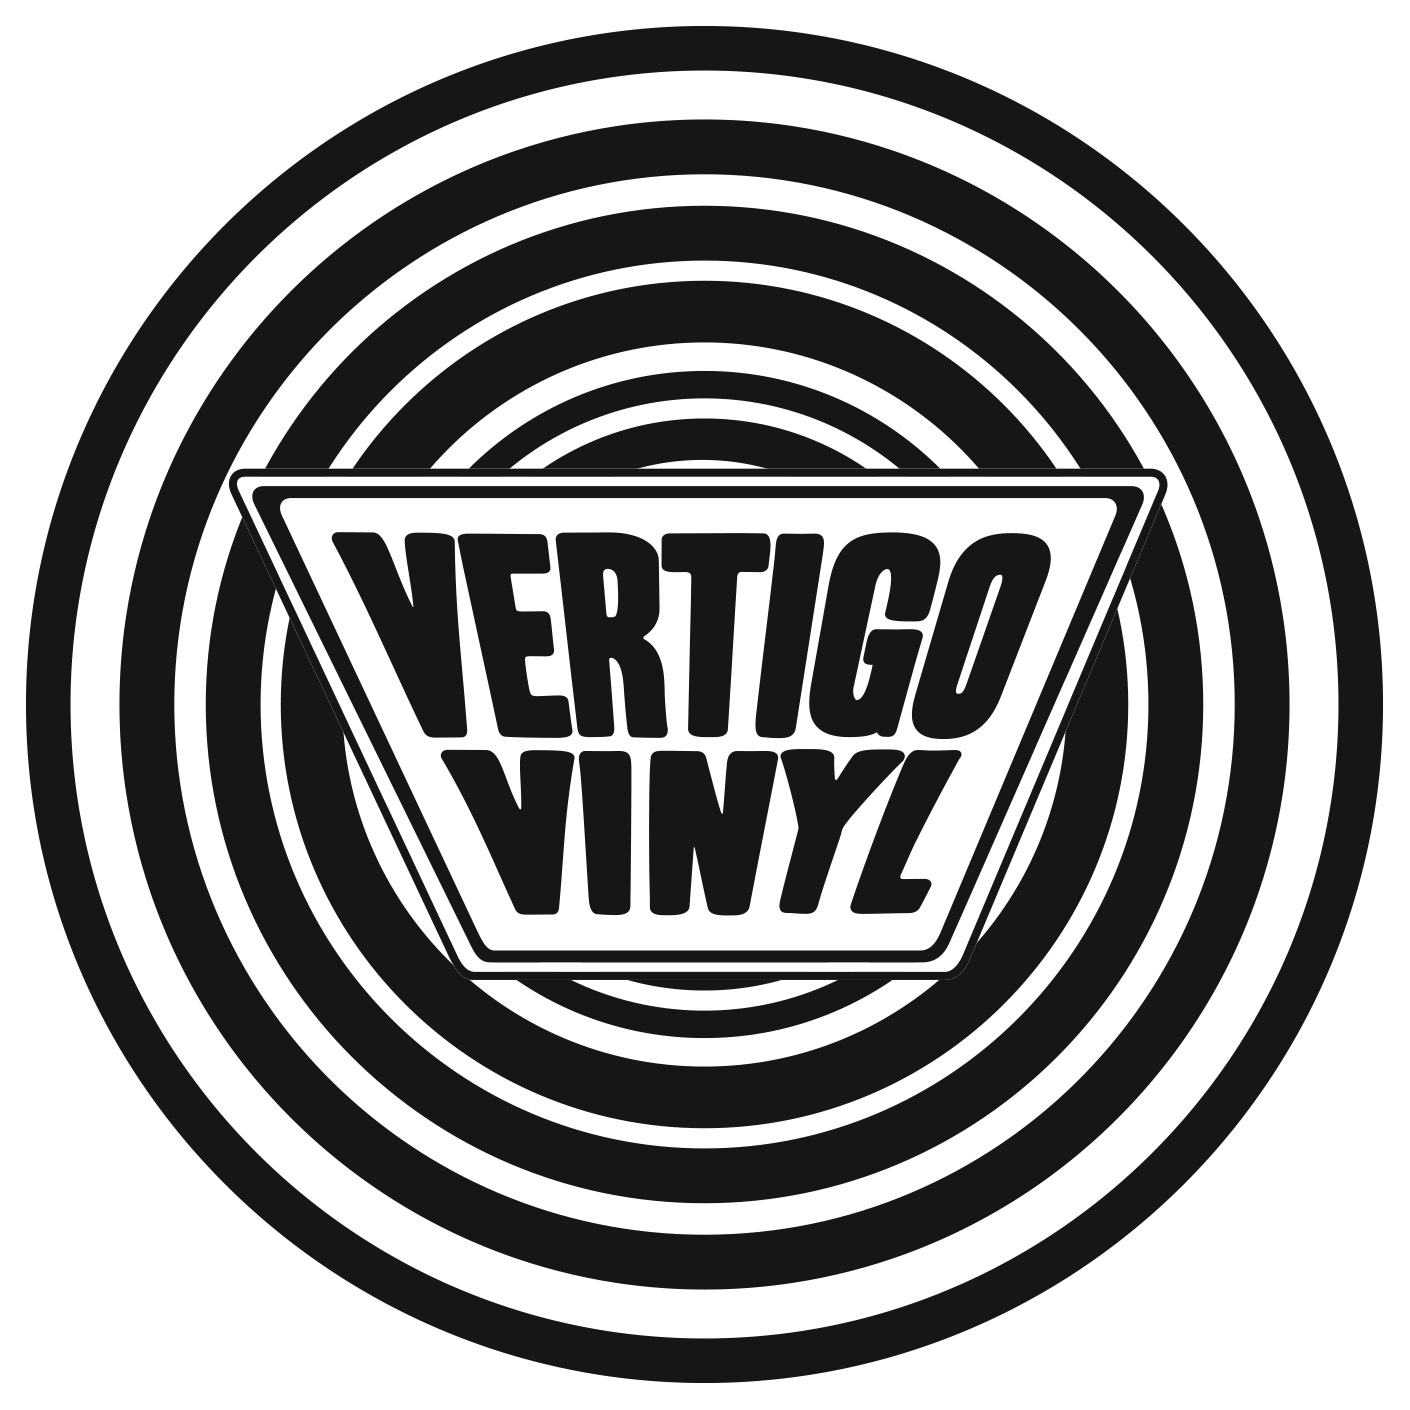 Vertigo Vinyl